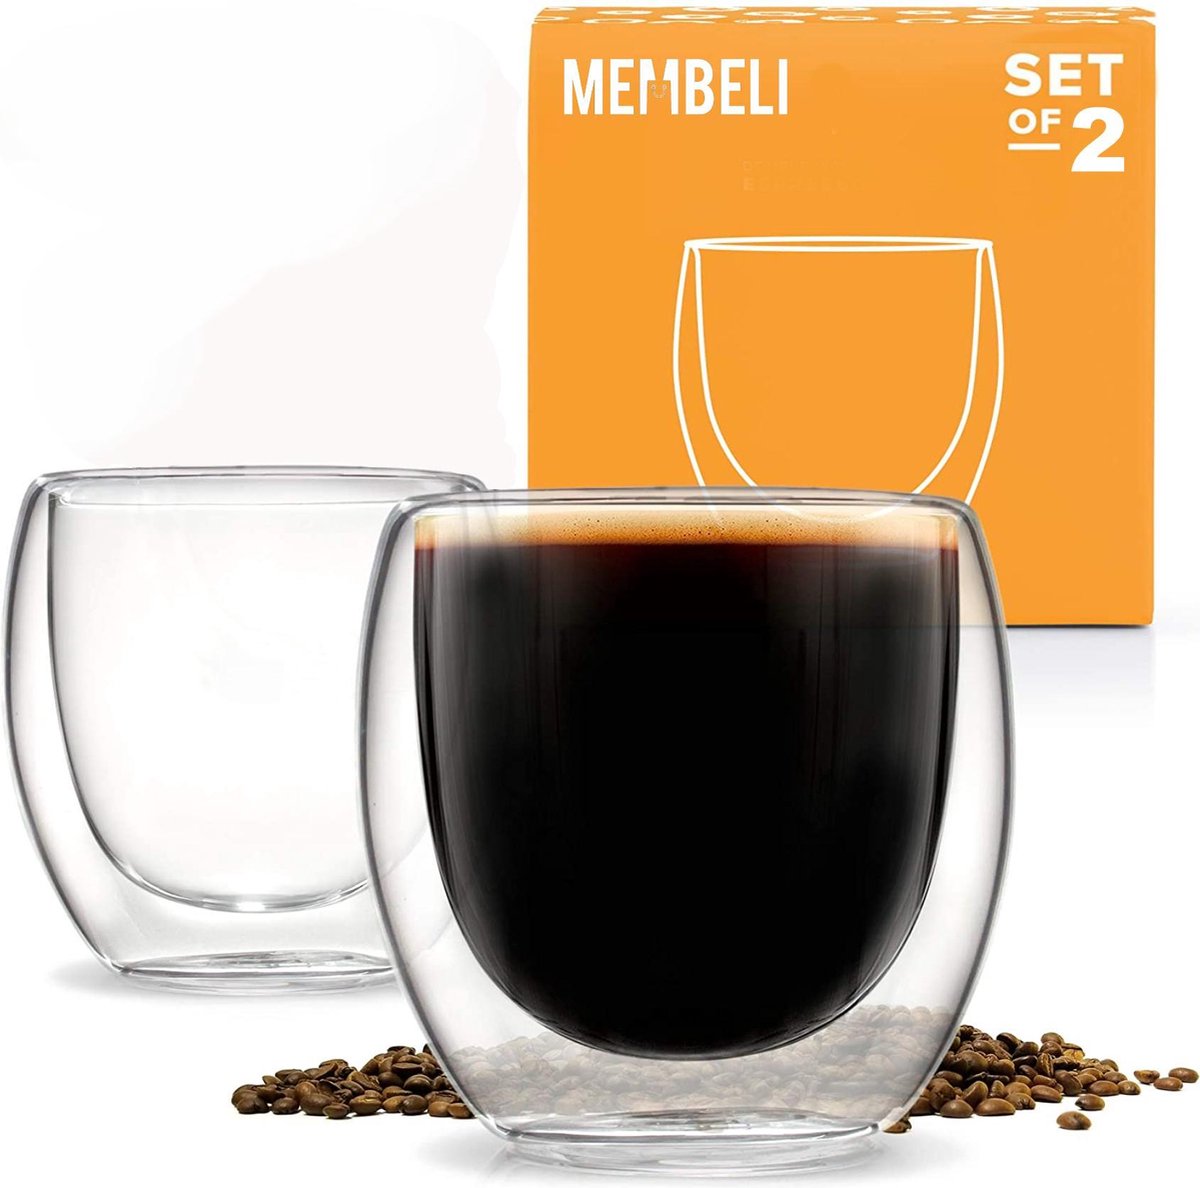 Membeli Espresso Koffie Kopjes set van 2 - Dubbelwandig Espresso Glazen zonder Oor - 80 mL - Koffiekopjes